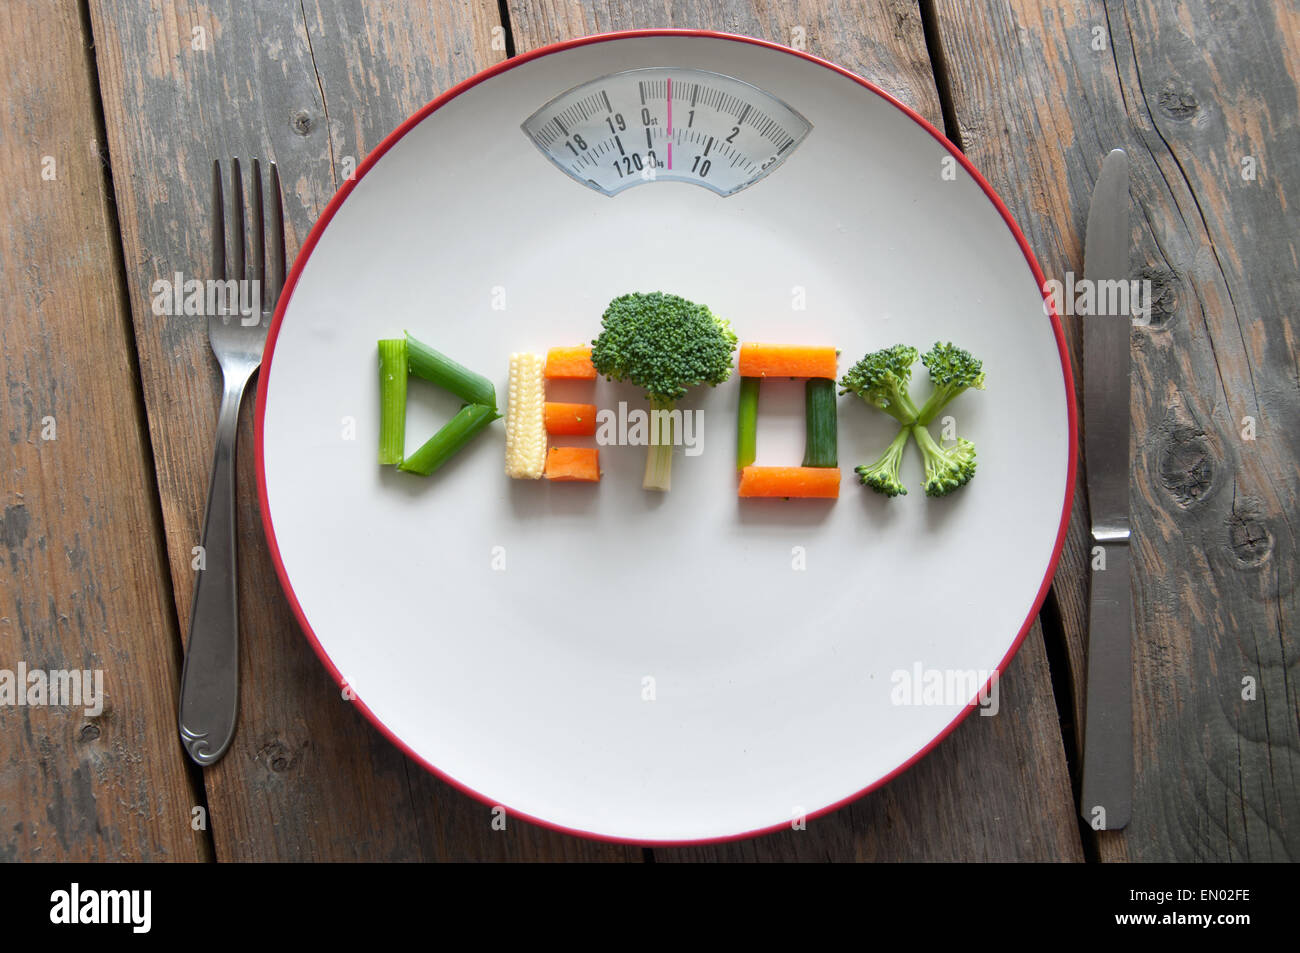 Detox texte sur une plaque de légumes divers y compris le brocoli, carottes et oignons de printemps Banque D'Images